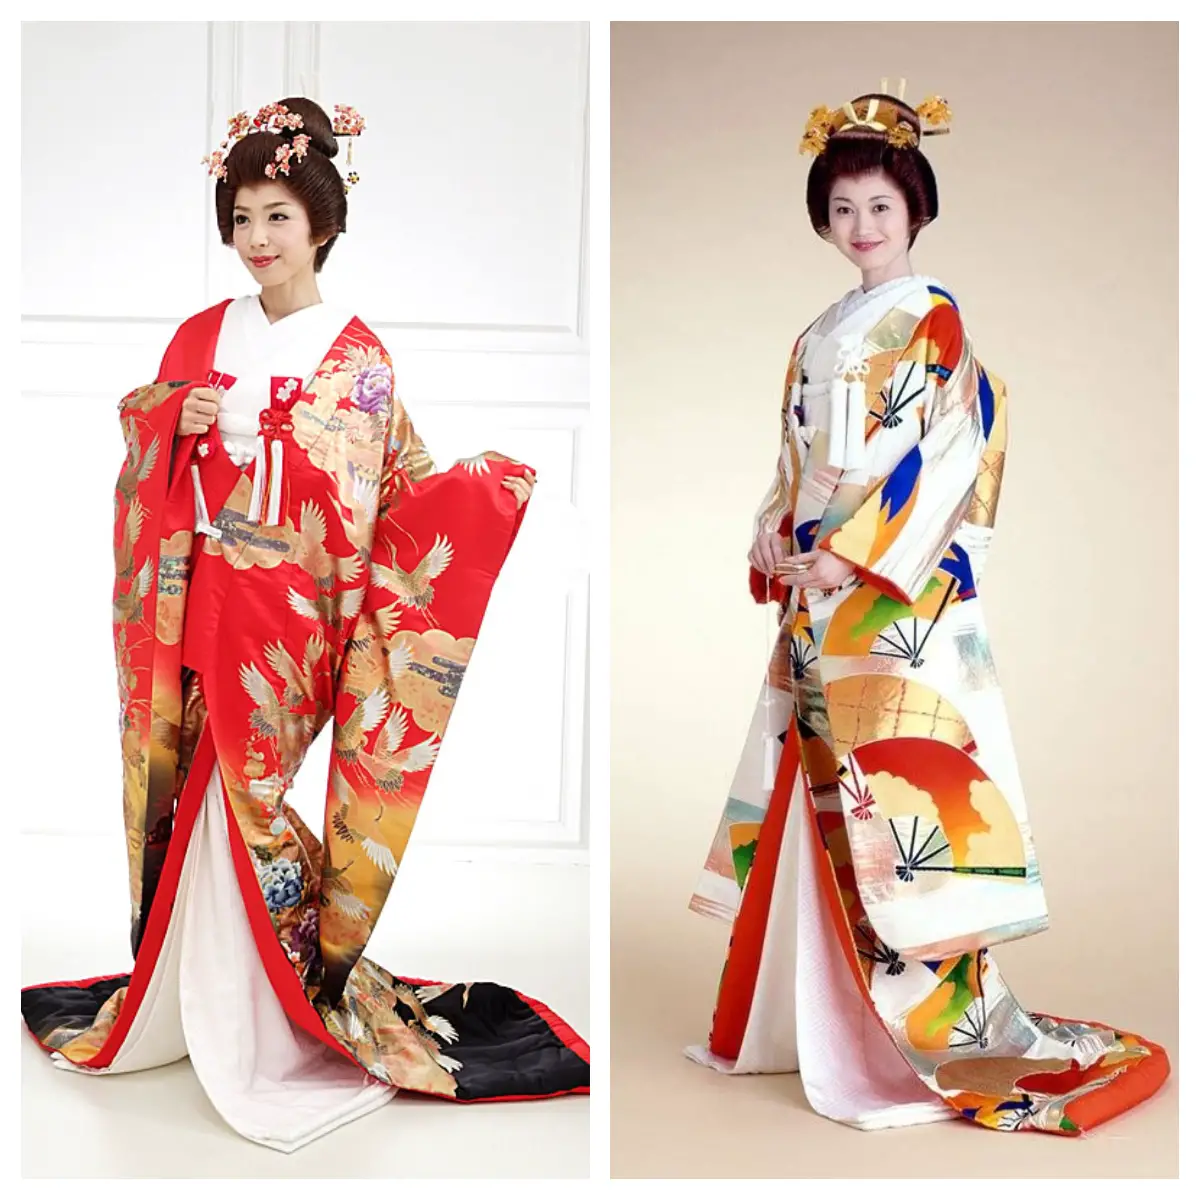 Japanese wedding kimono.